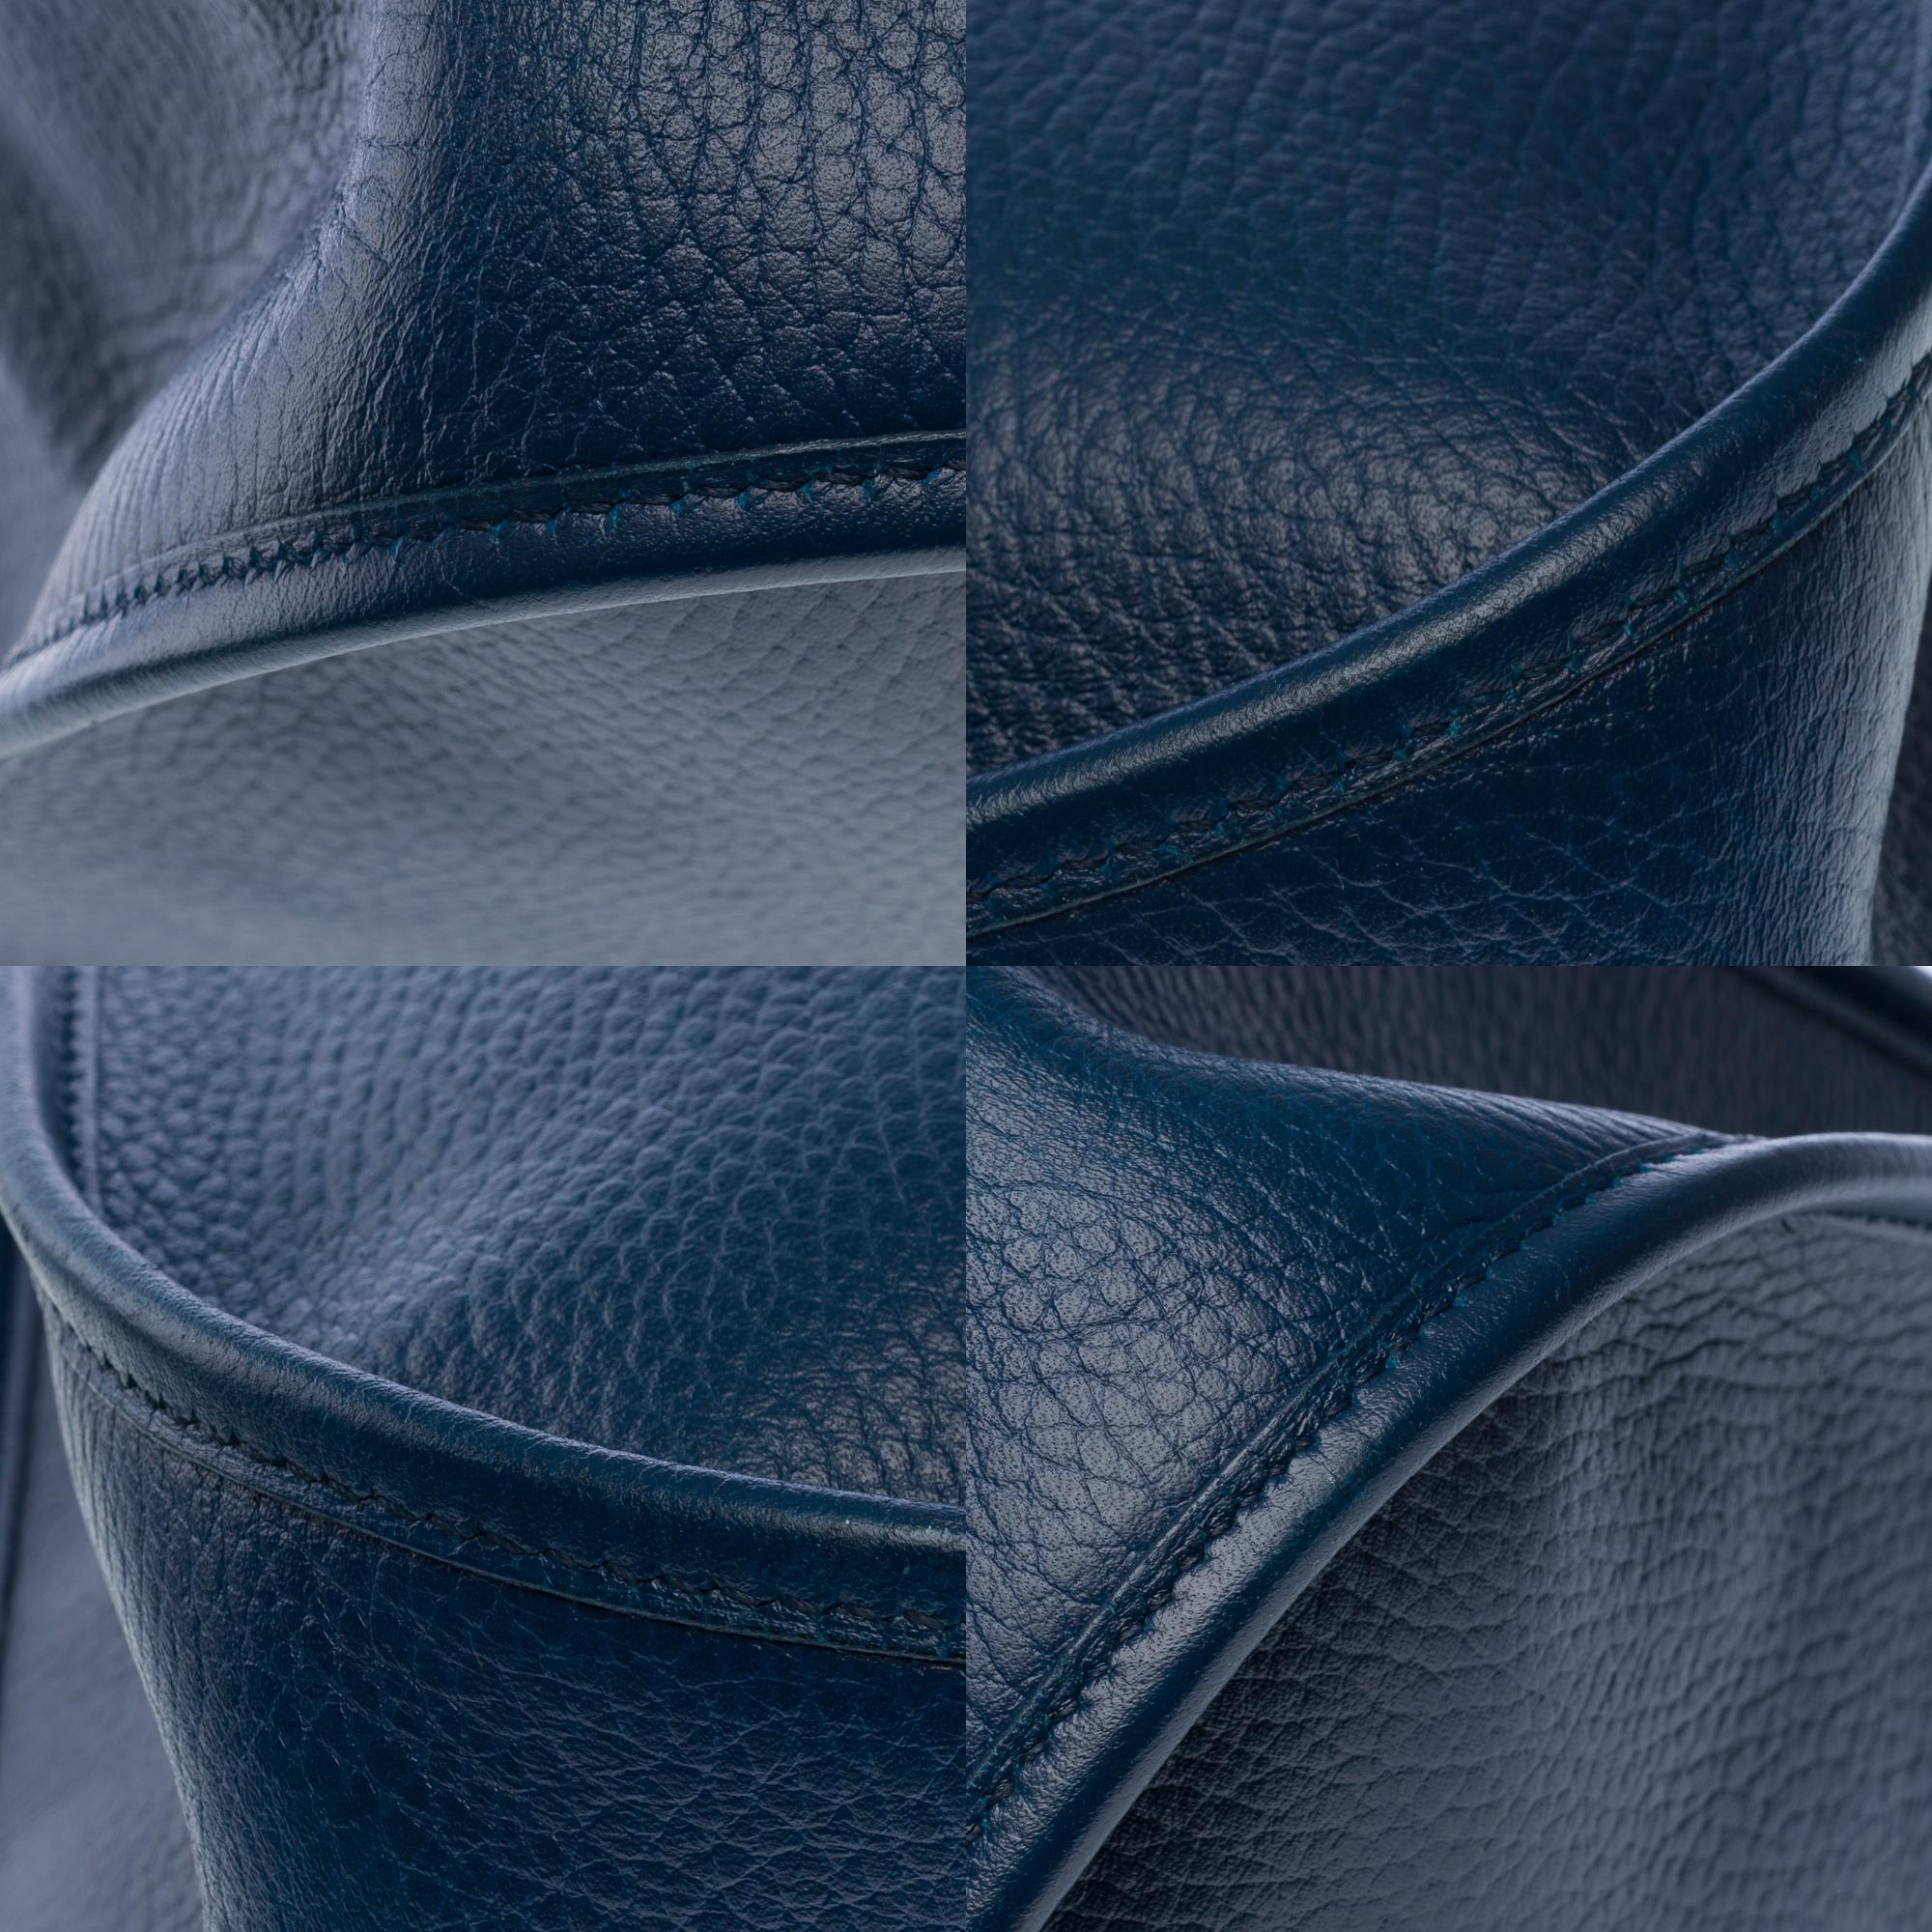 Hermès Evelyne GM  shoulder bag in Navy Blue Taurillon Clemence leather, GHW For Sale 8